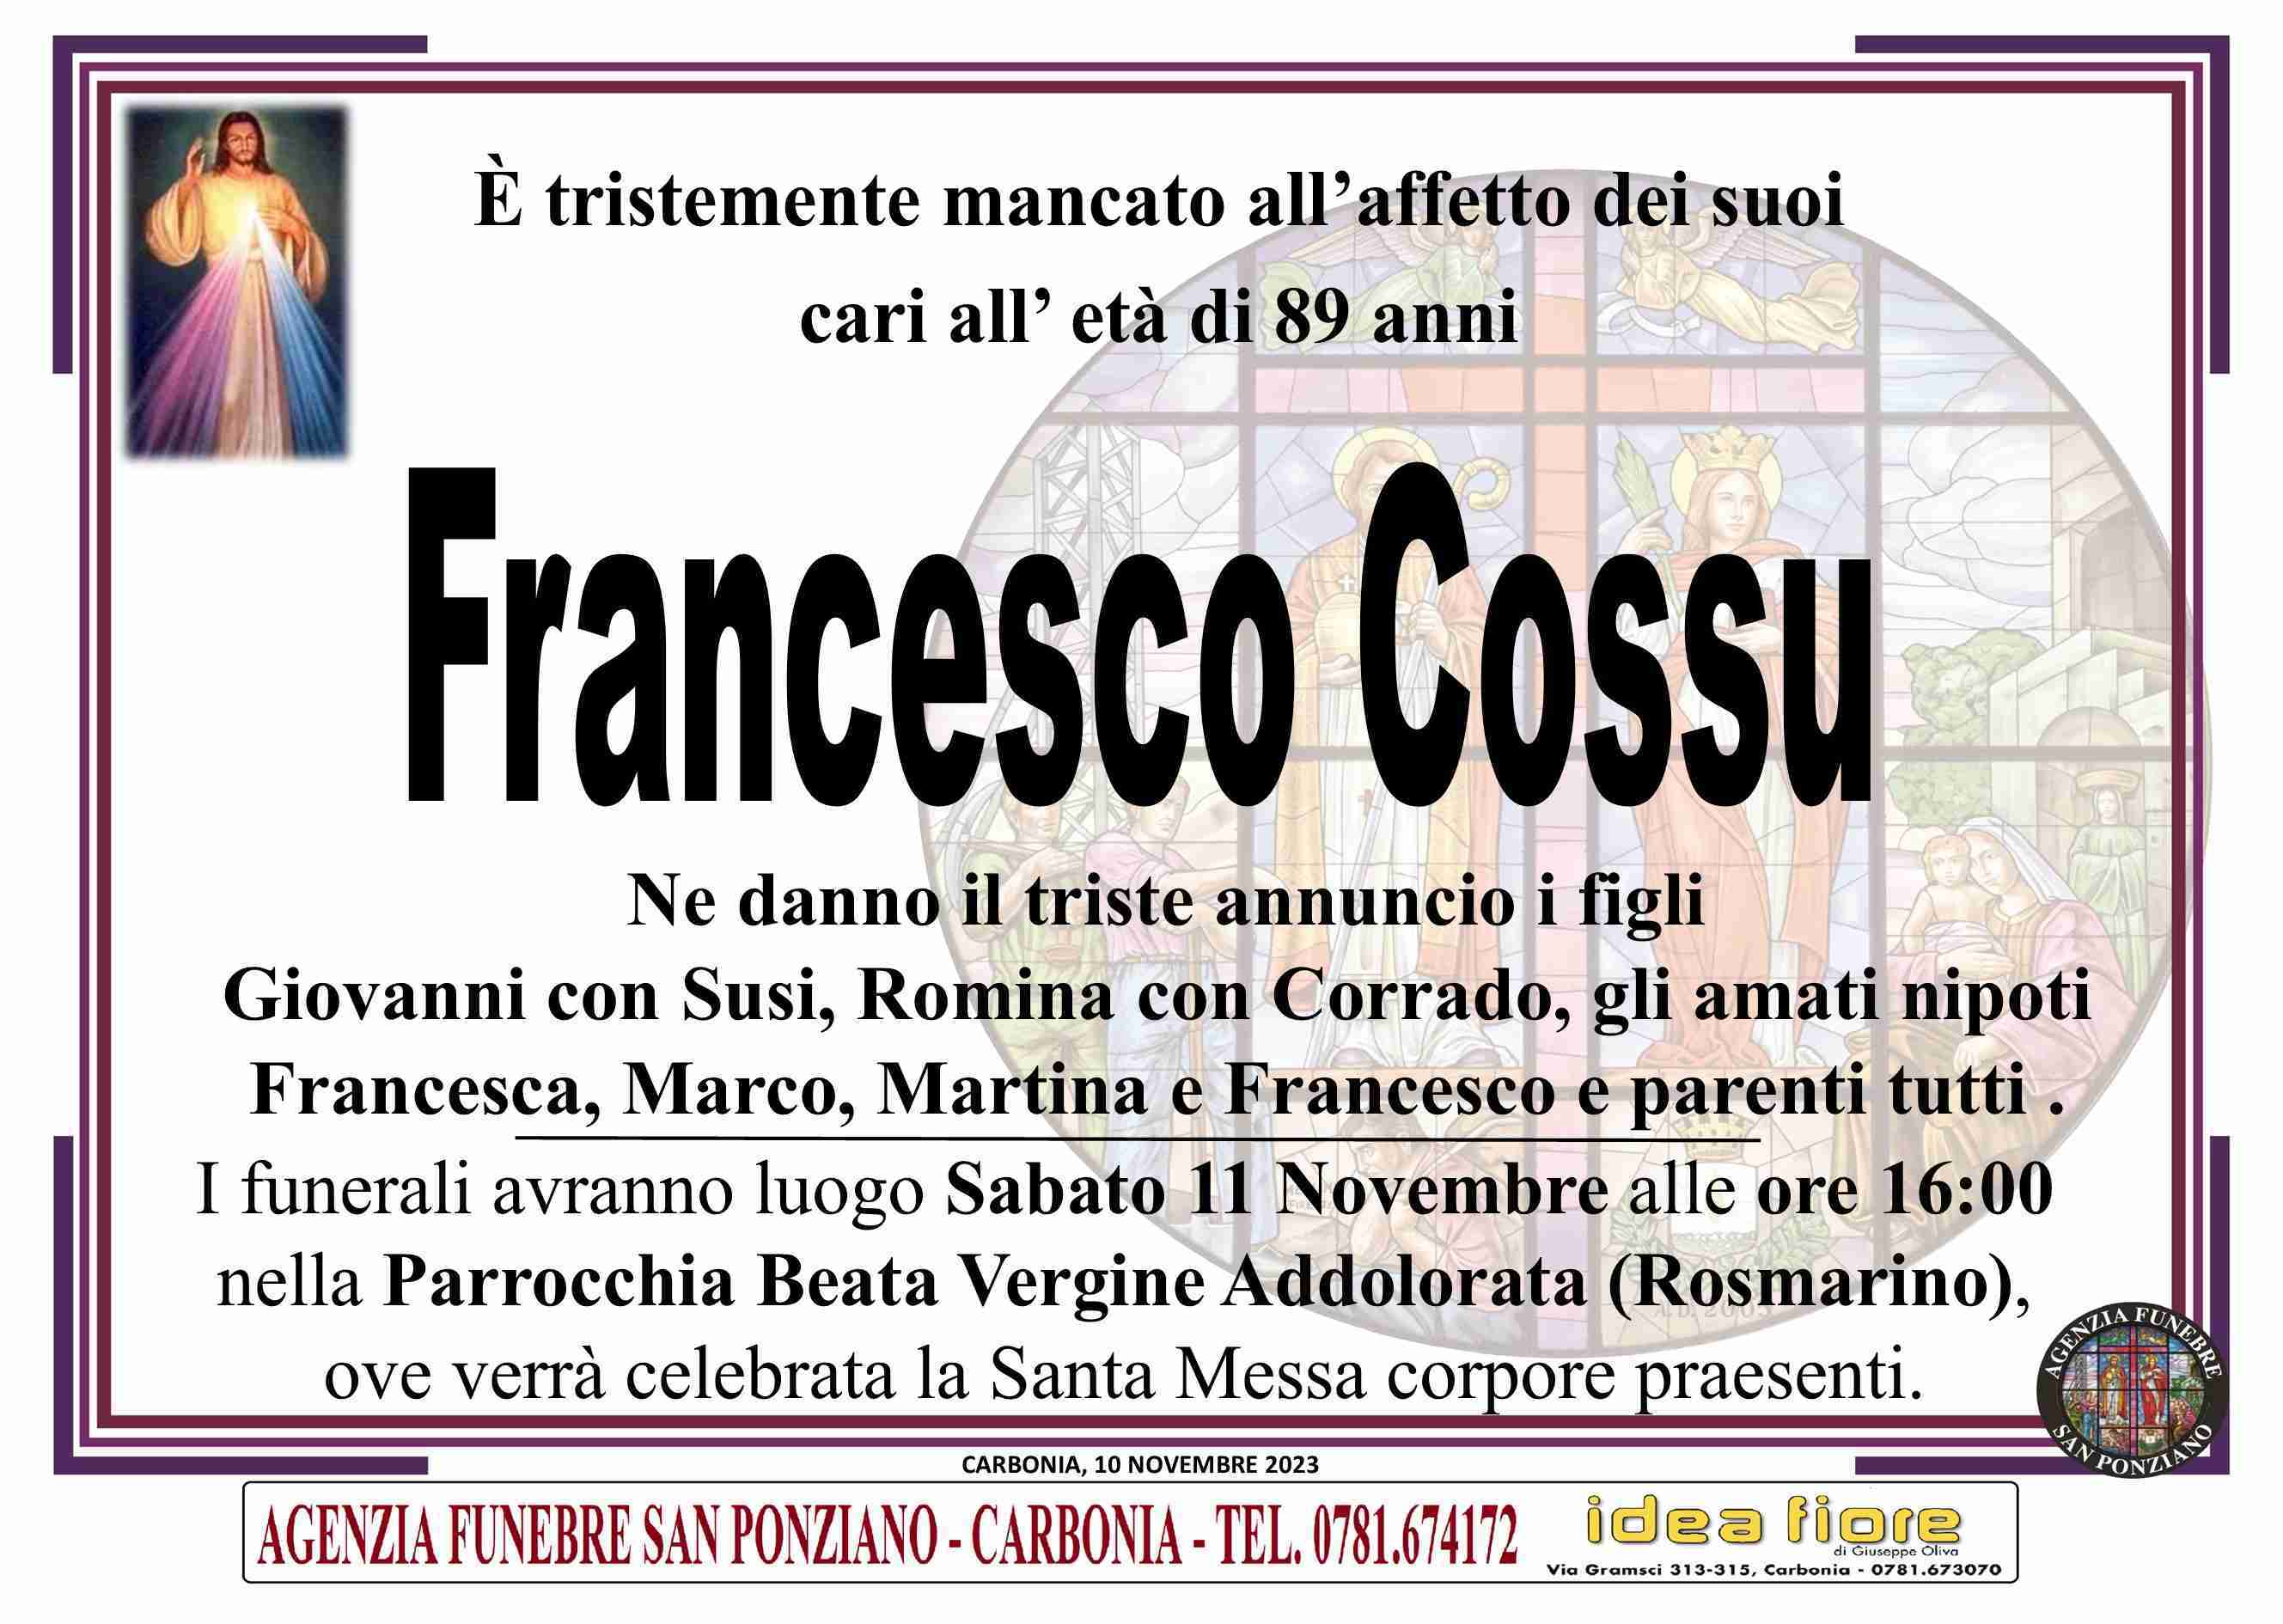 Francesco Italo Cossu